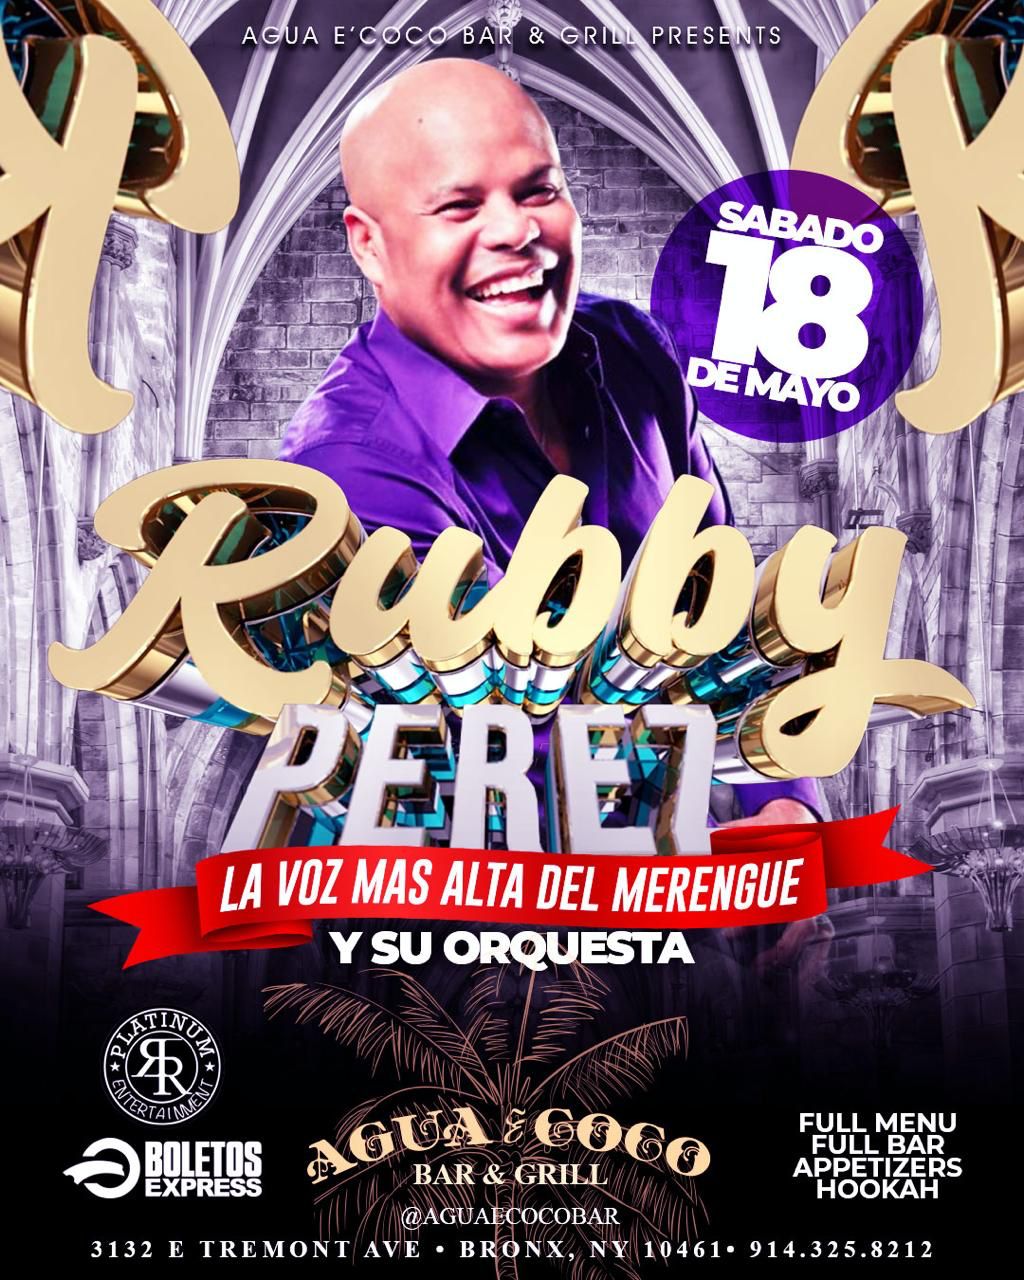 RUBBY PEREZ & SU ORQUESTA